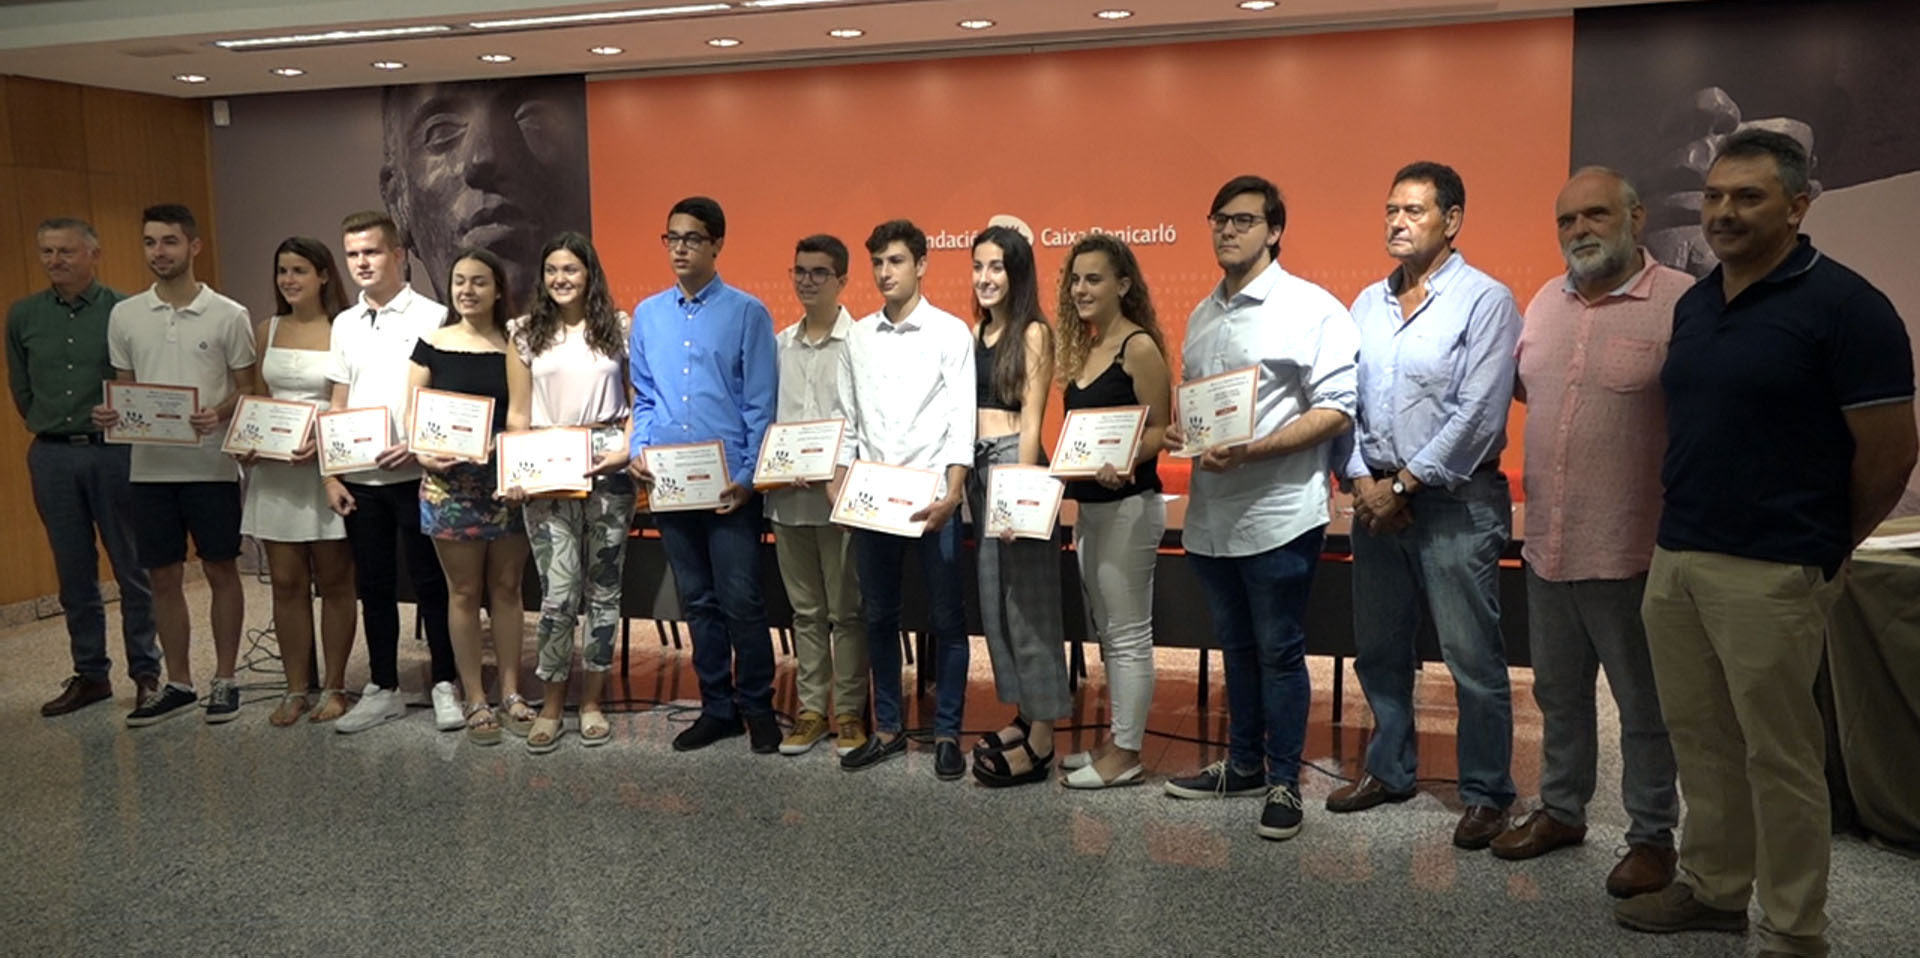 Benicarló, la Fundació Caixa Benicarló entrega les beques d'excel·lència acadèmica a 12 alumnes